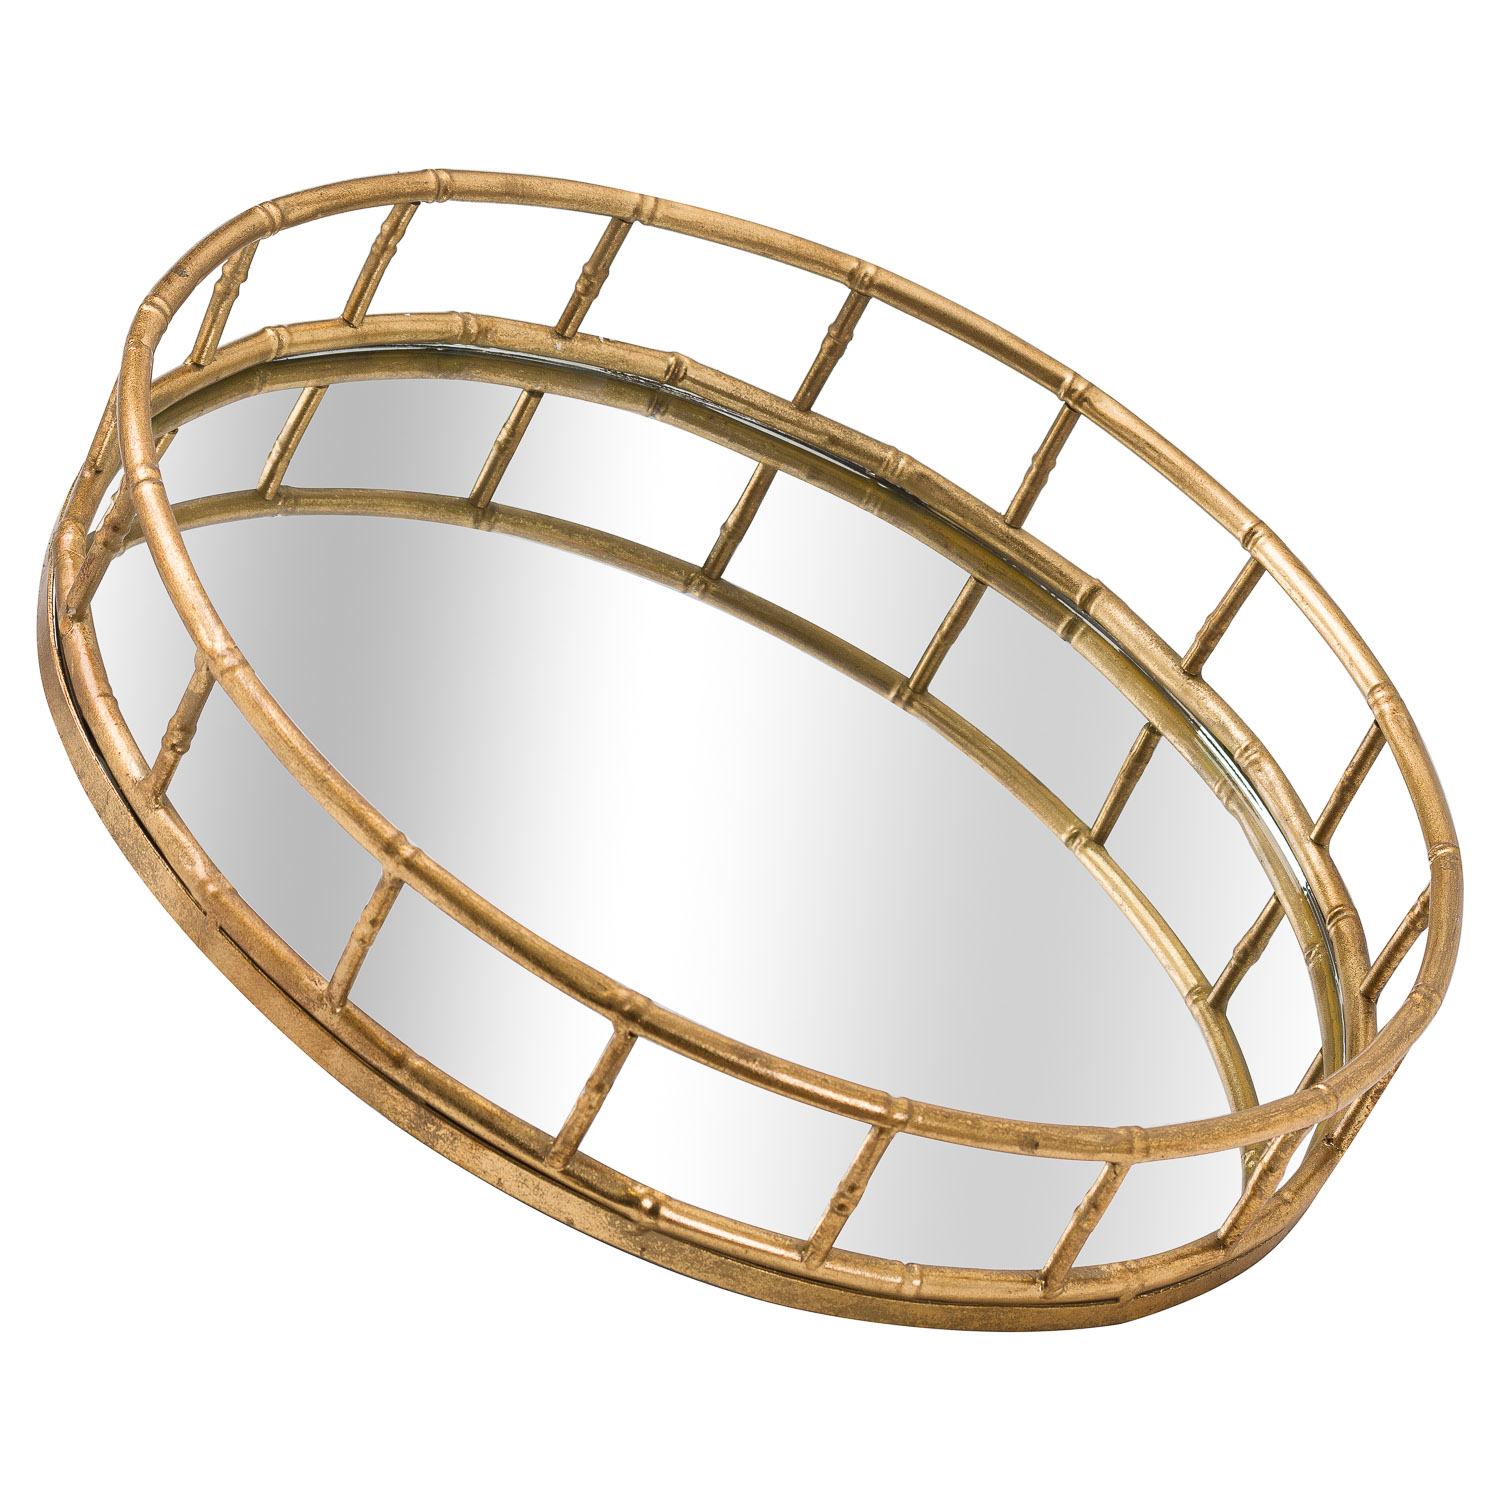 Set Of 2 Detailed Circular Trays - Image 2